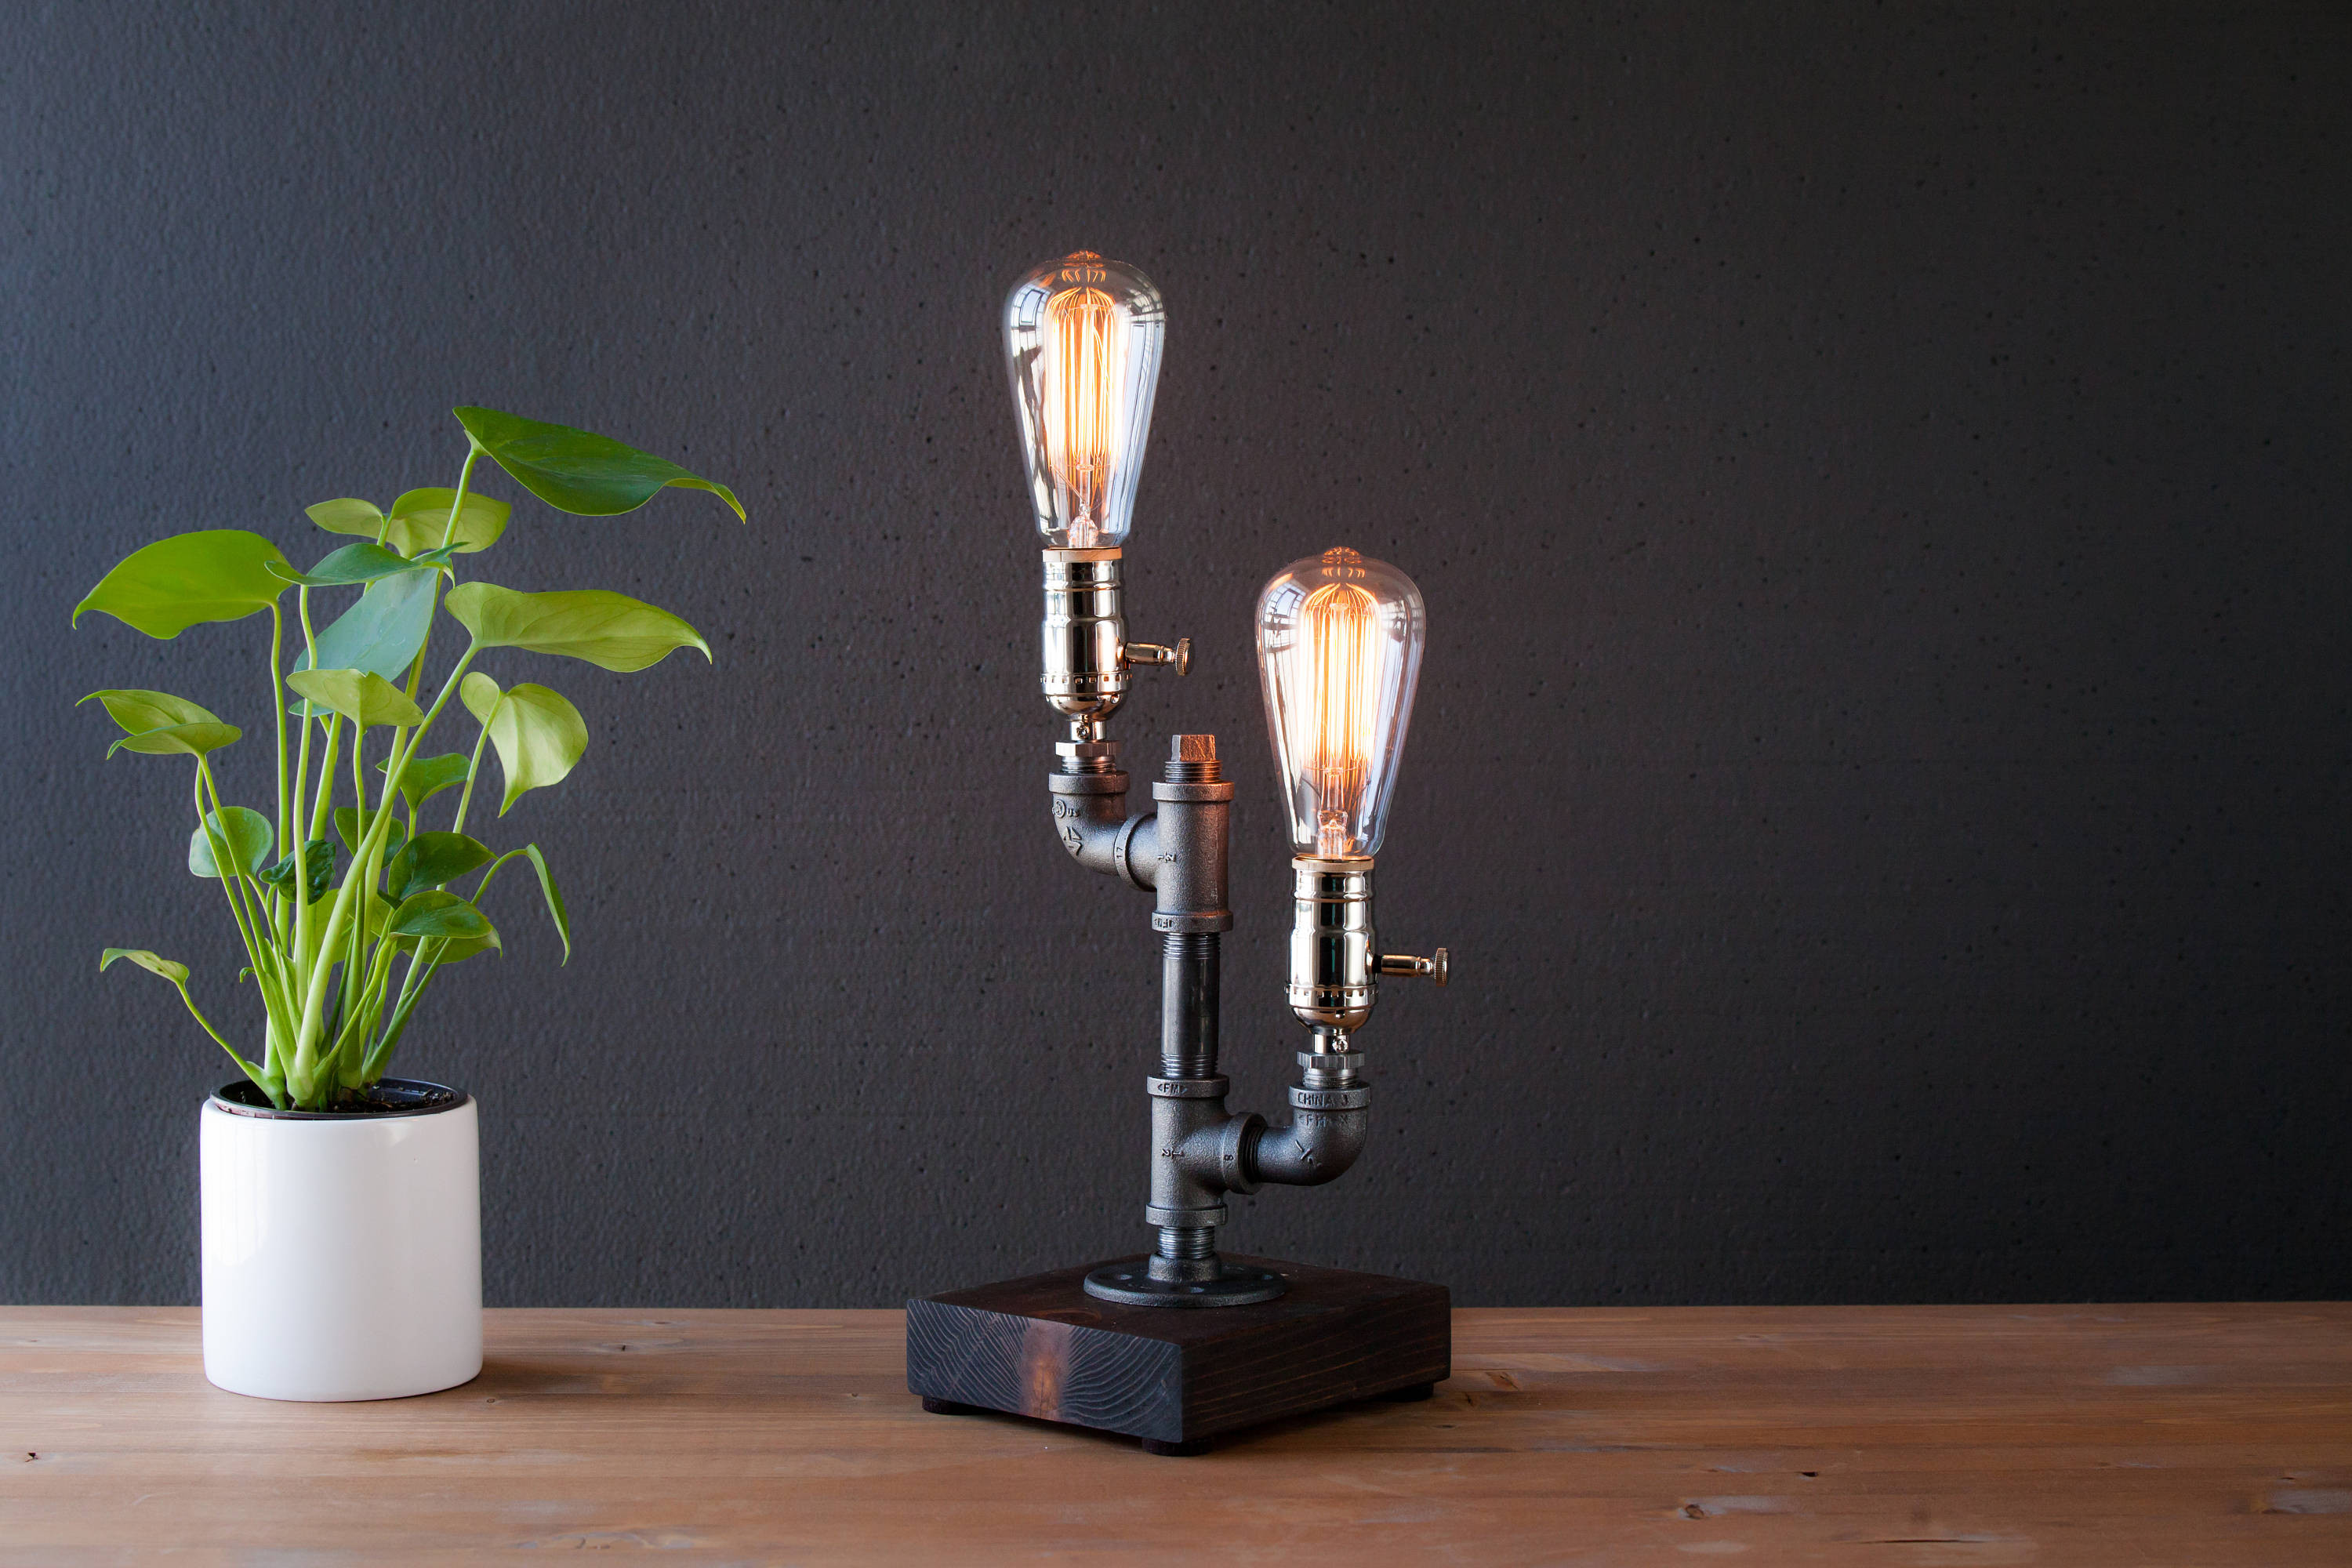 Best ideas about Unique Desk Lamp
. Save or Pin Edison lamp Rustic decor Unique Table lamp Industrial Now.